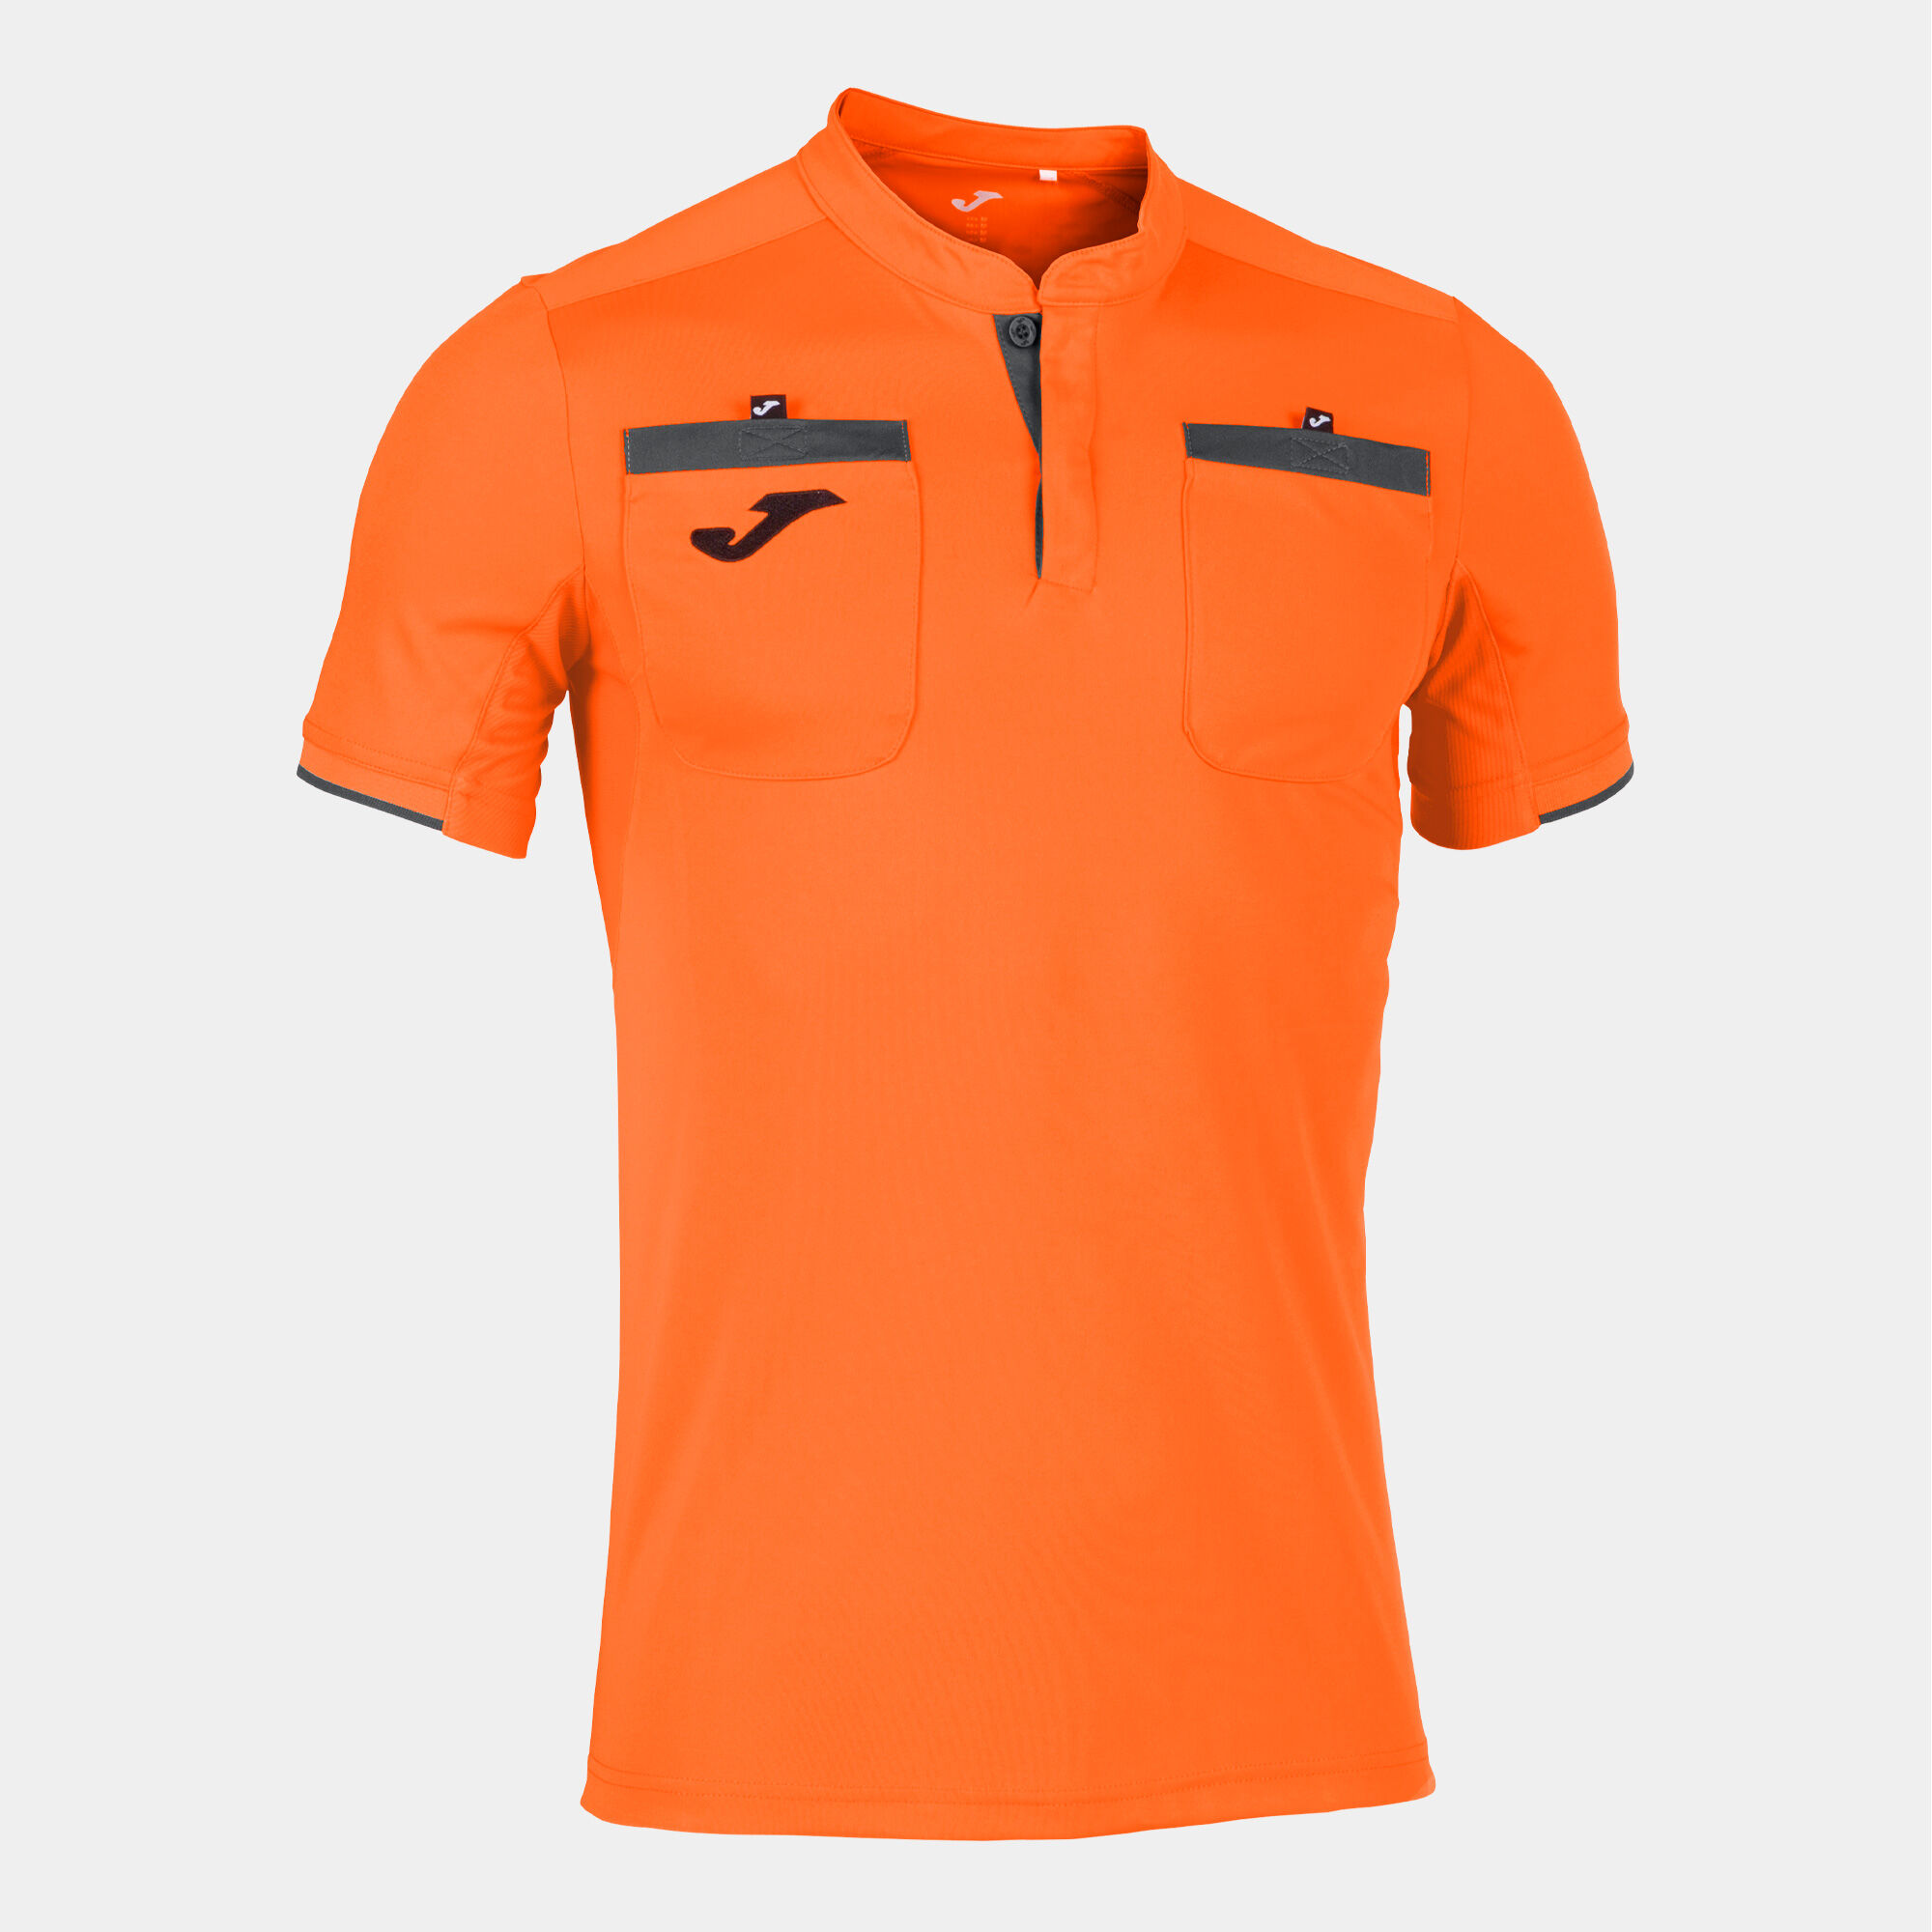 Tricou cu mânecă scurtă bărbaȚi Referee portocaliu